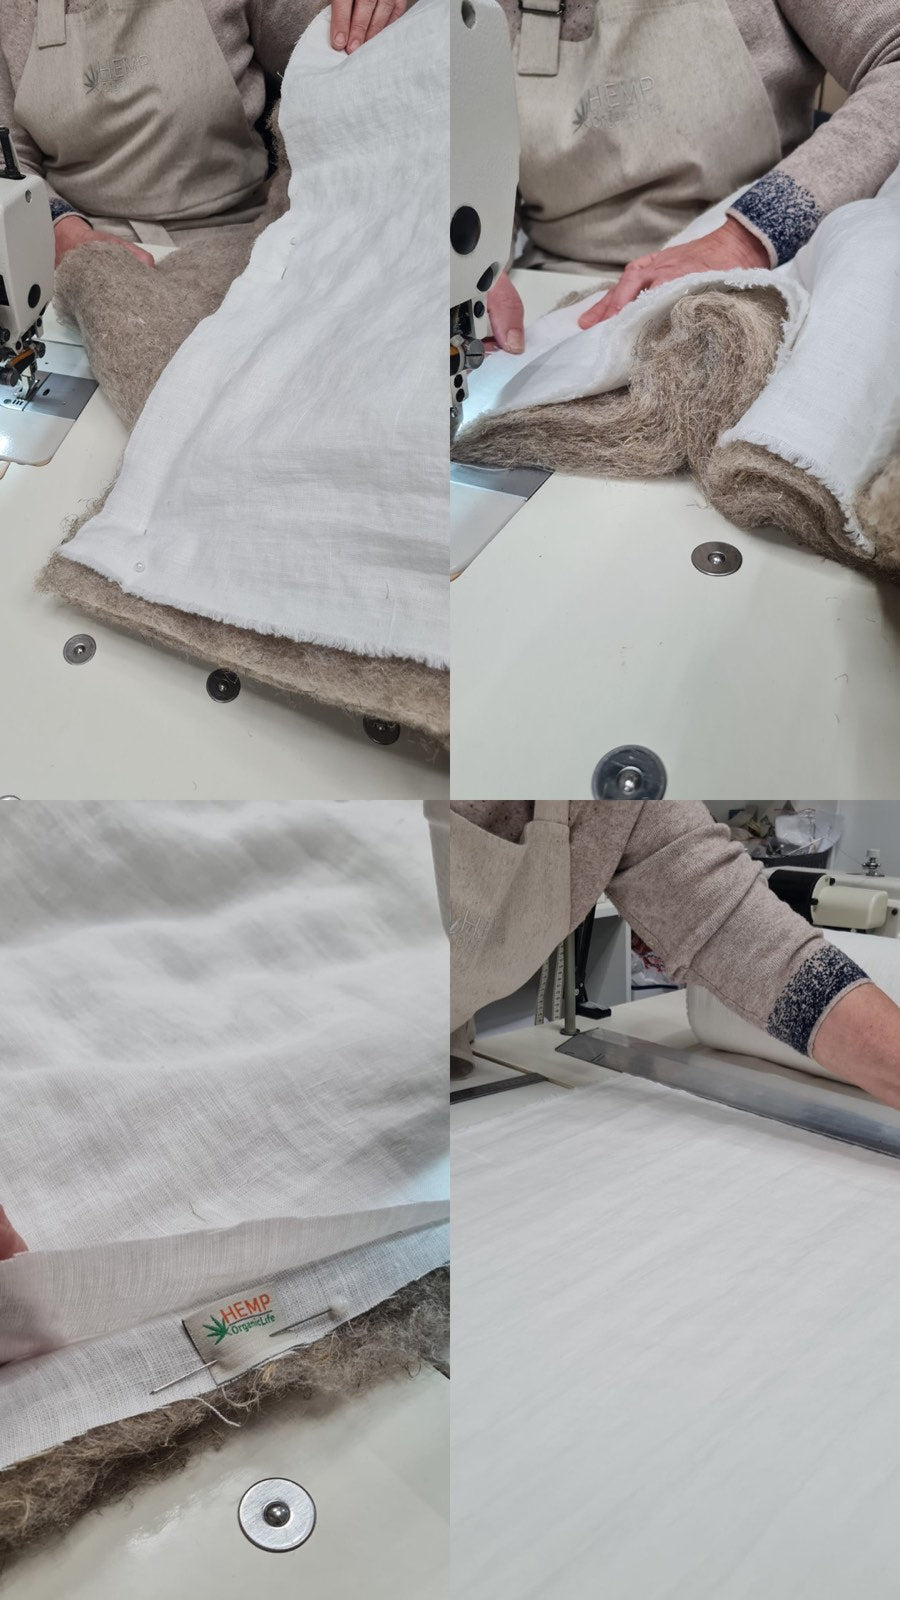 White Natural HEMP Linen blanket quilt in stripe- linen organic fabric + filler organic Hemp fiber - Full Queen King custom sizes